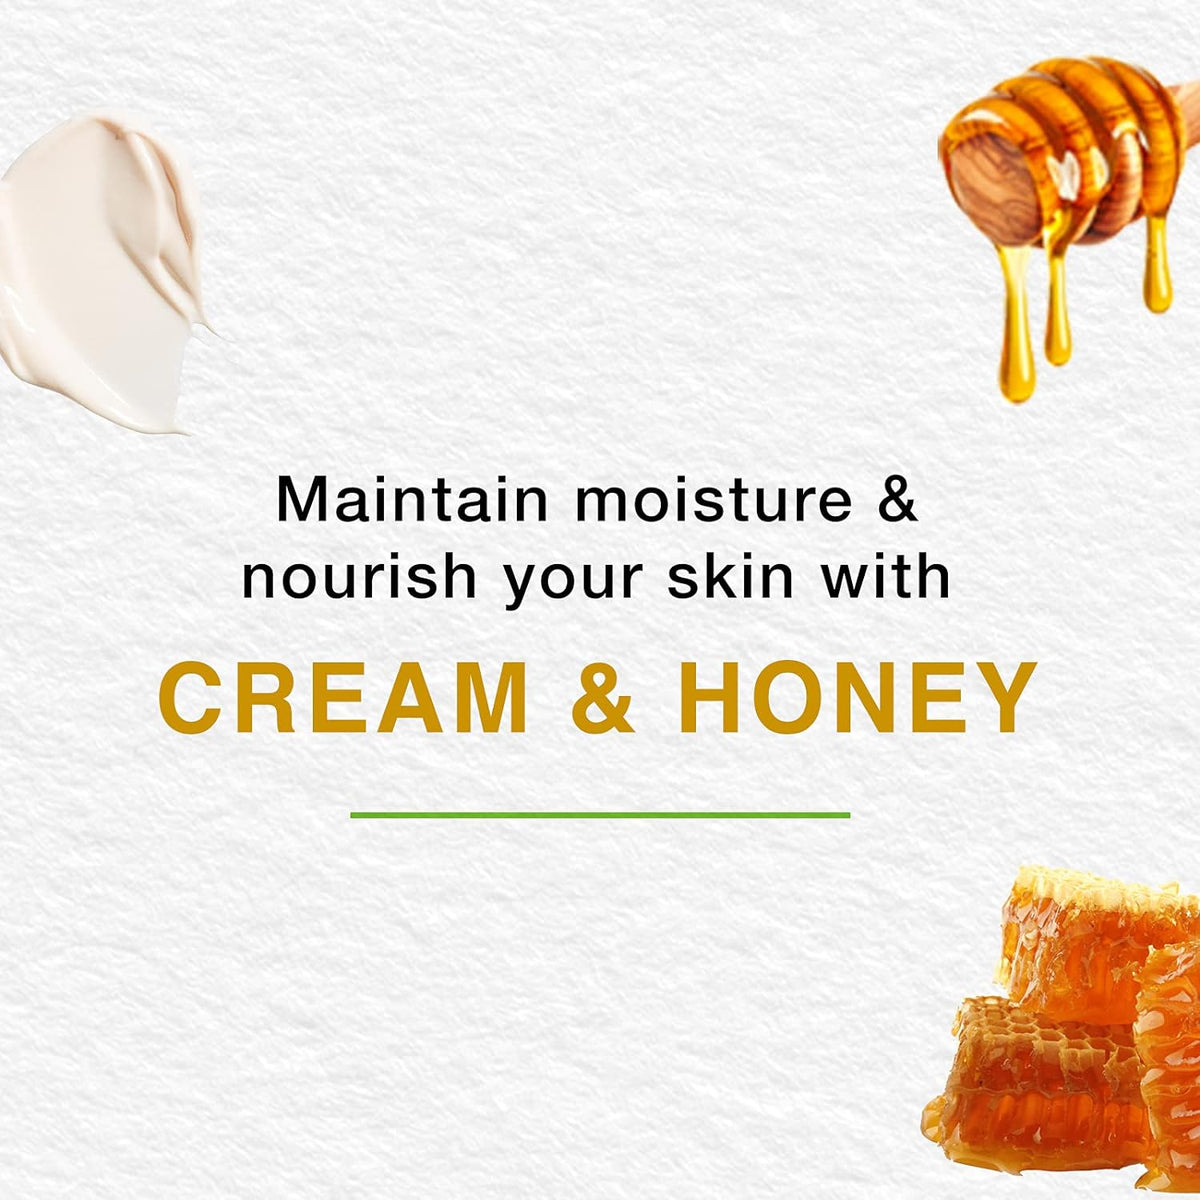 صابون مغذي بالكريم والعسل من هيمالايا يغذي ويرطب ويحافظ على البشرة ناعمة ونضرة -6×125 جم 